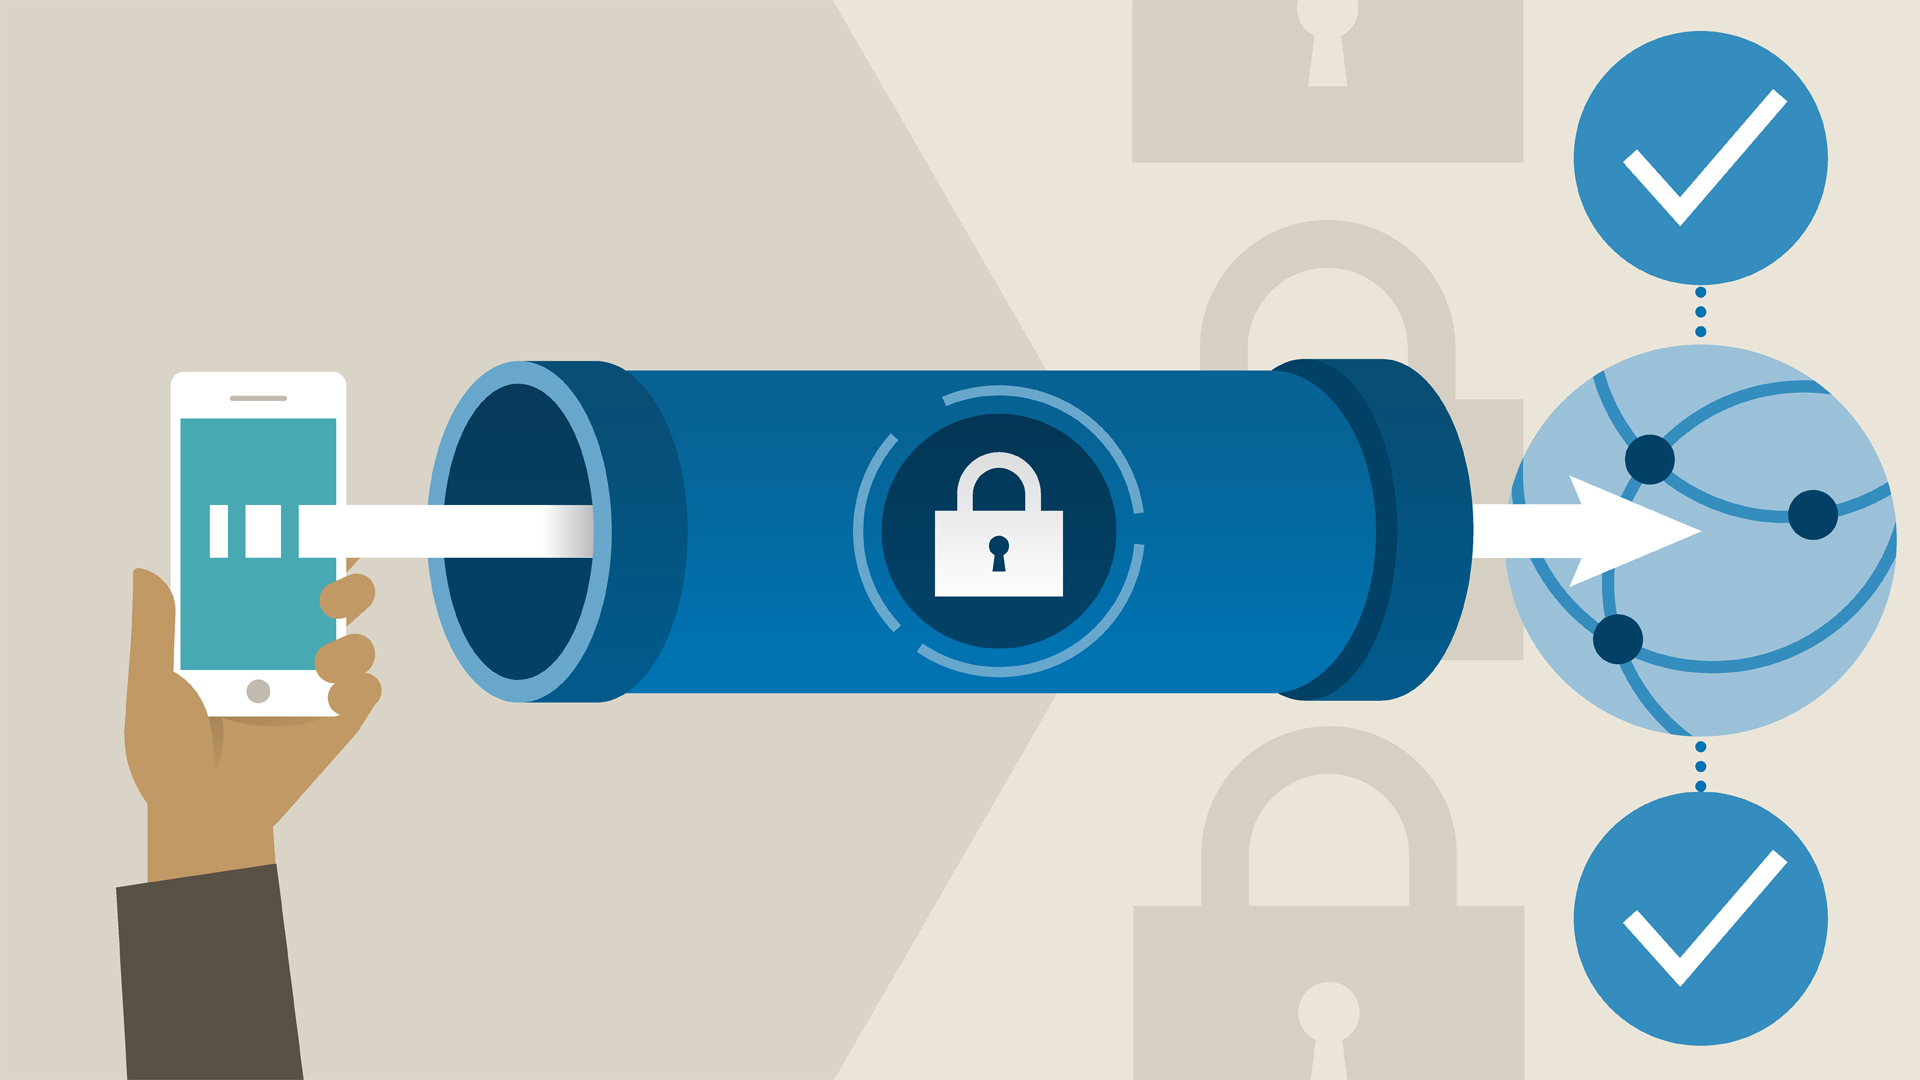 ikev2 - VPN là gì? Tại sao lại sử dụng VPN để bảo mật thông tin trên mạng Internet? 1 số giao thức cơ bản của VPN.